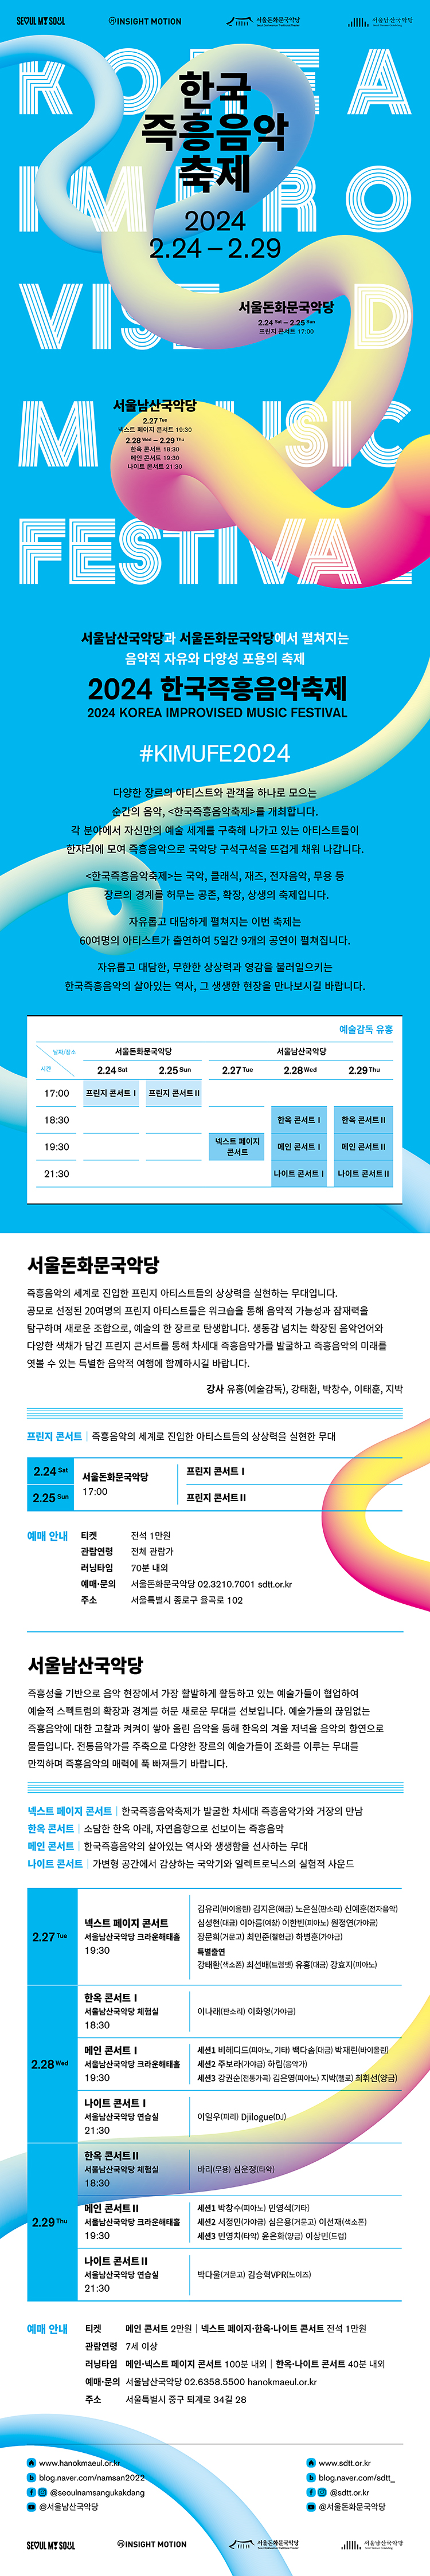 한국즉흥음악축제 프린지 콘서트 상세 페이지